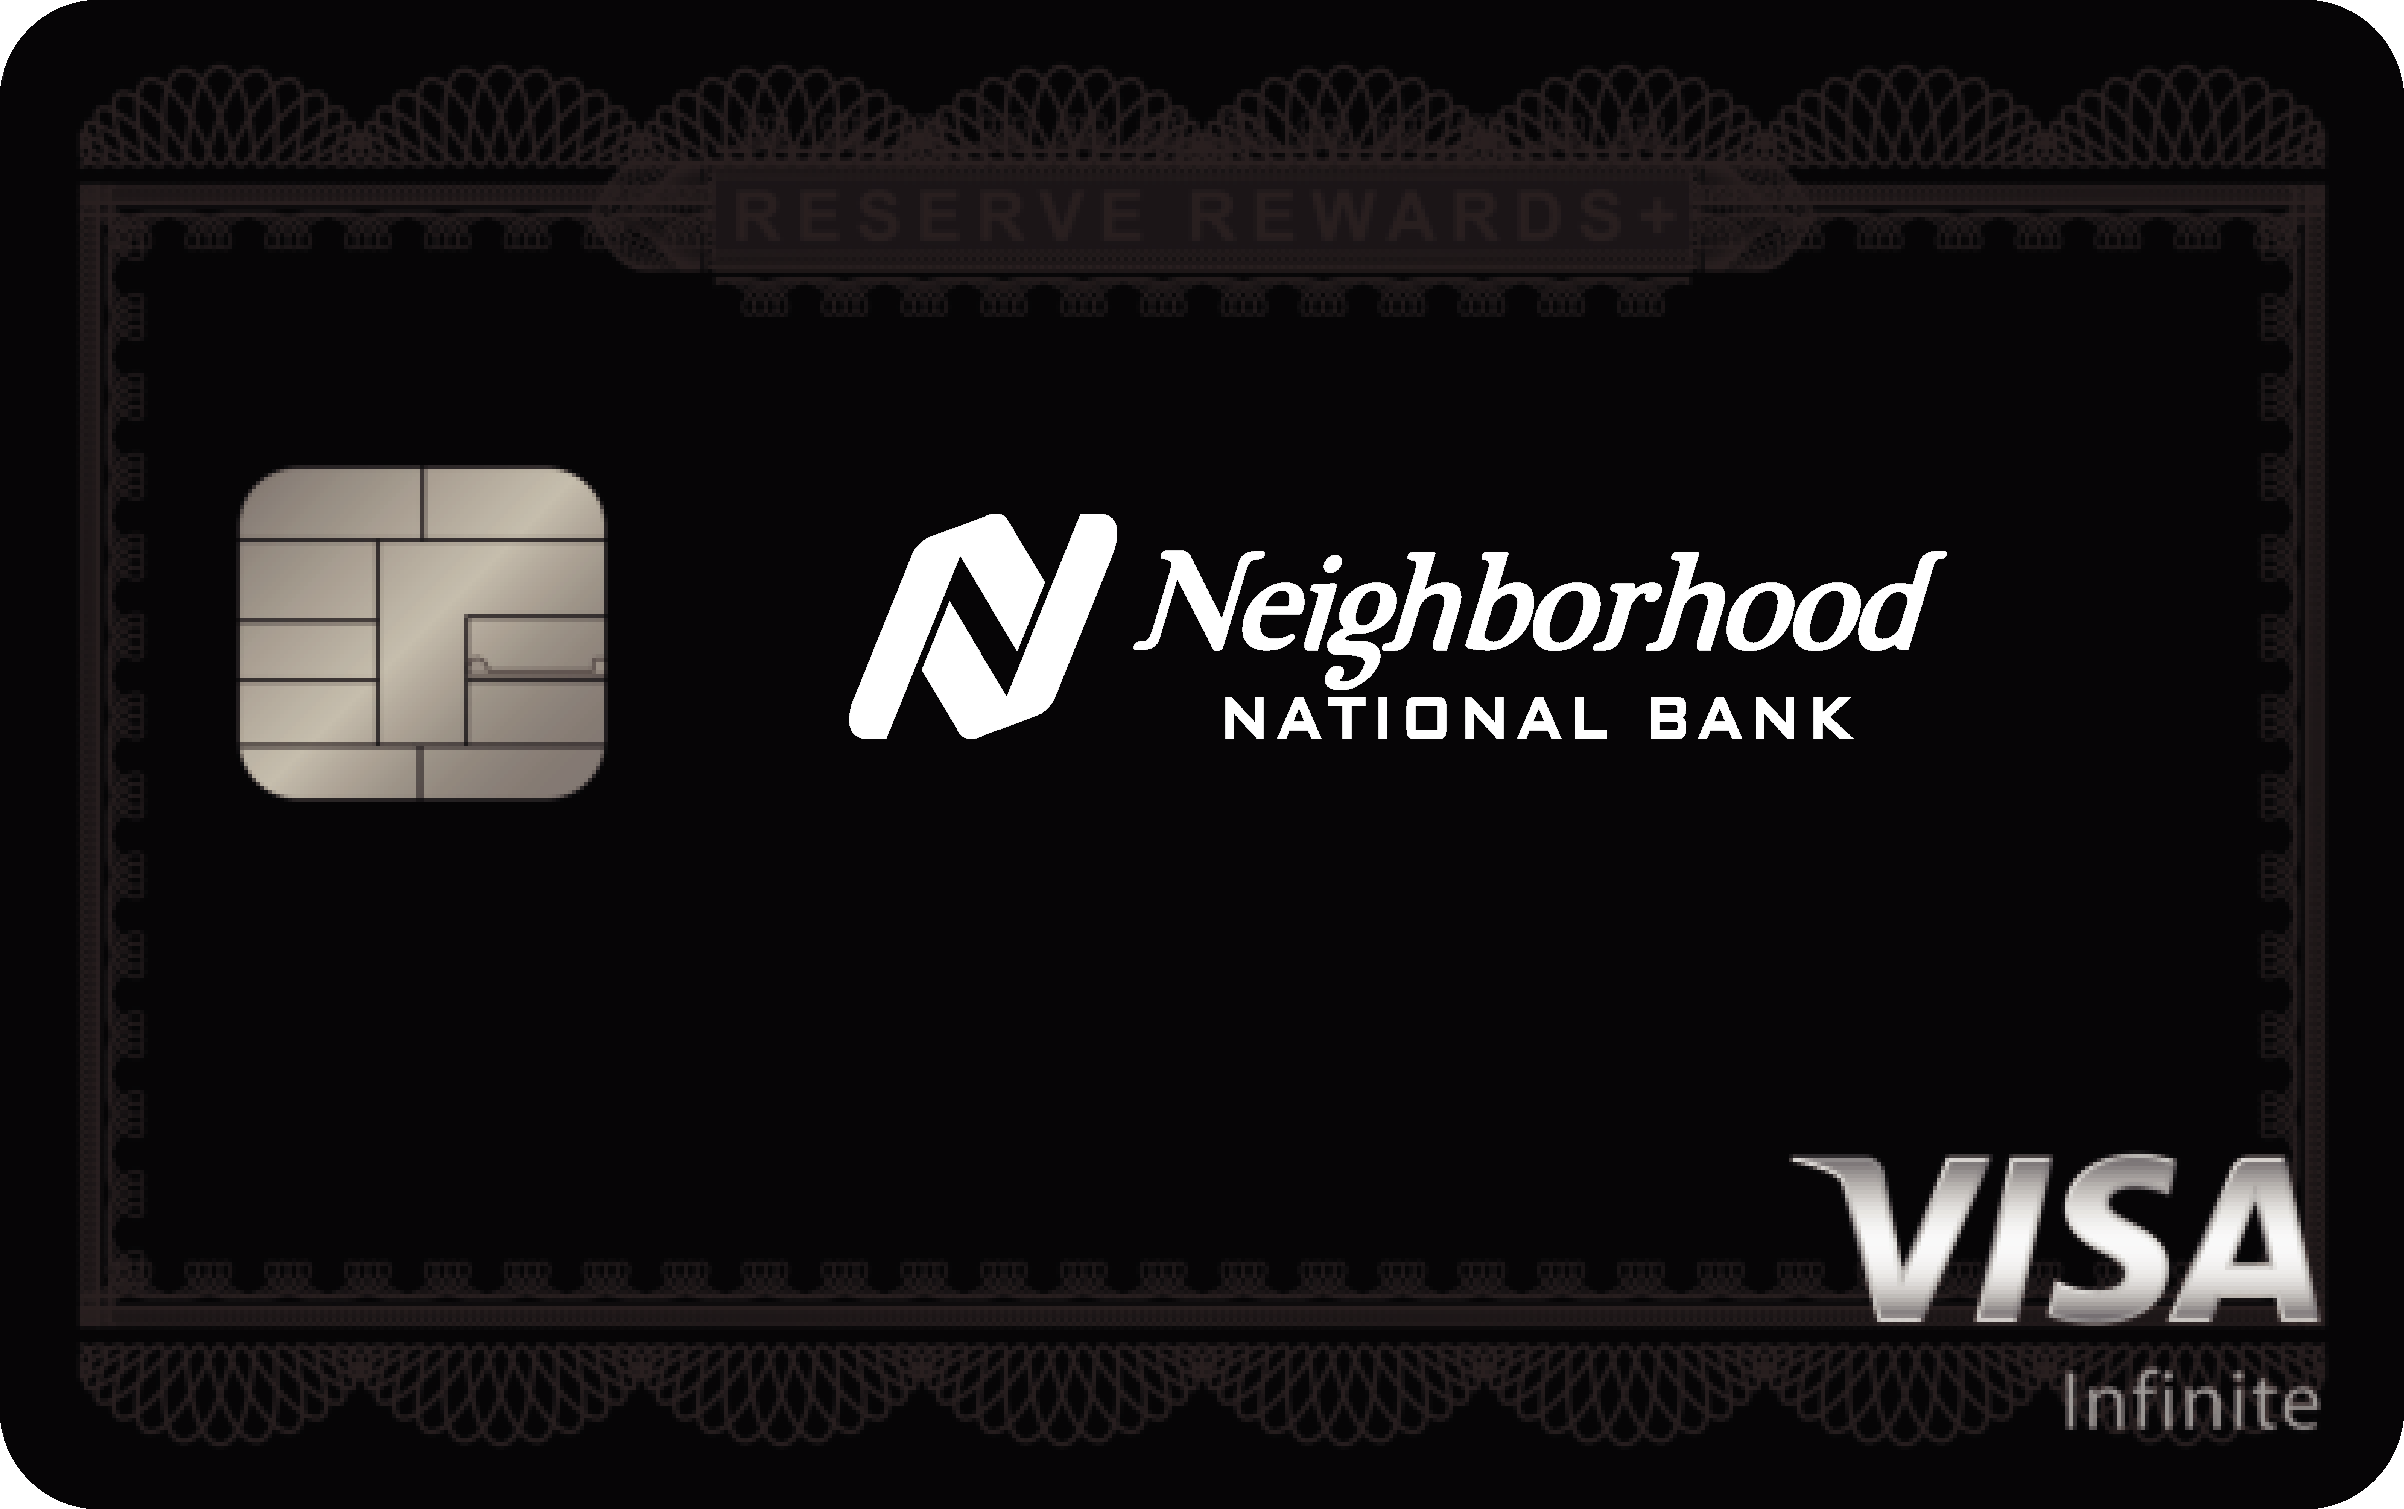 Neighborhood National Bank